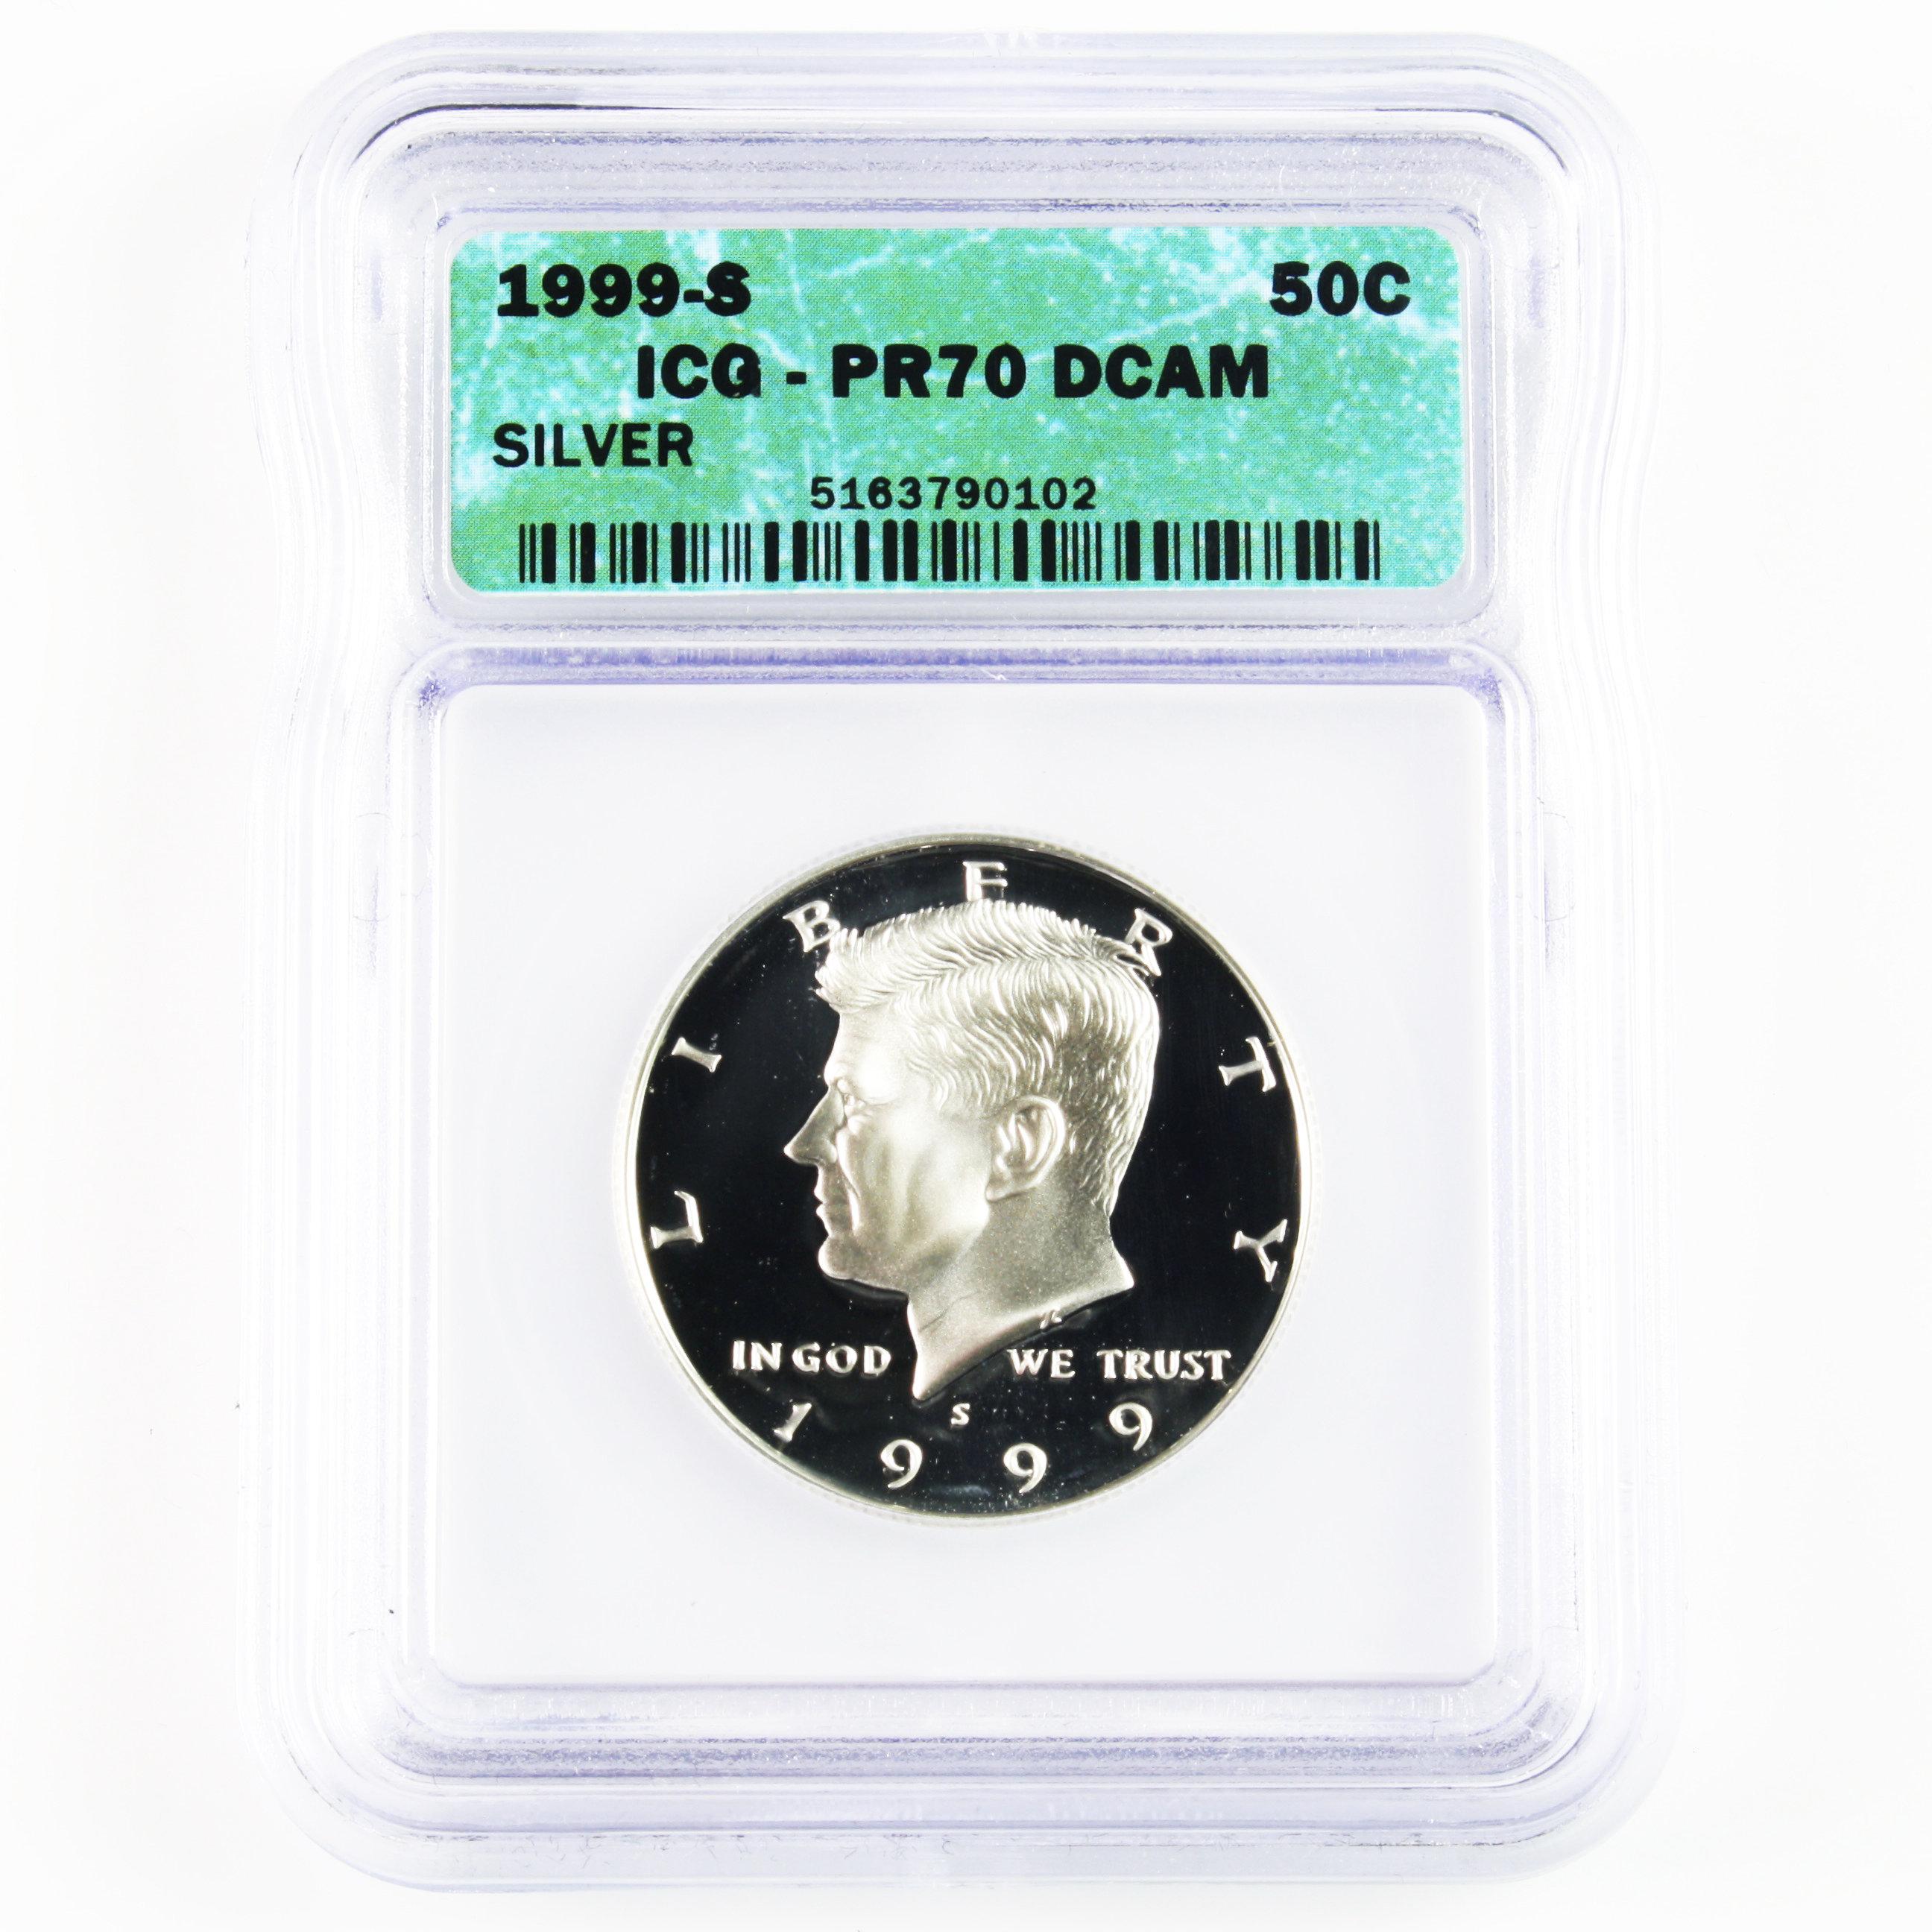 Certified 1999-S U.S. proof silver Kennedy half dollar